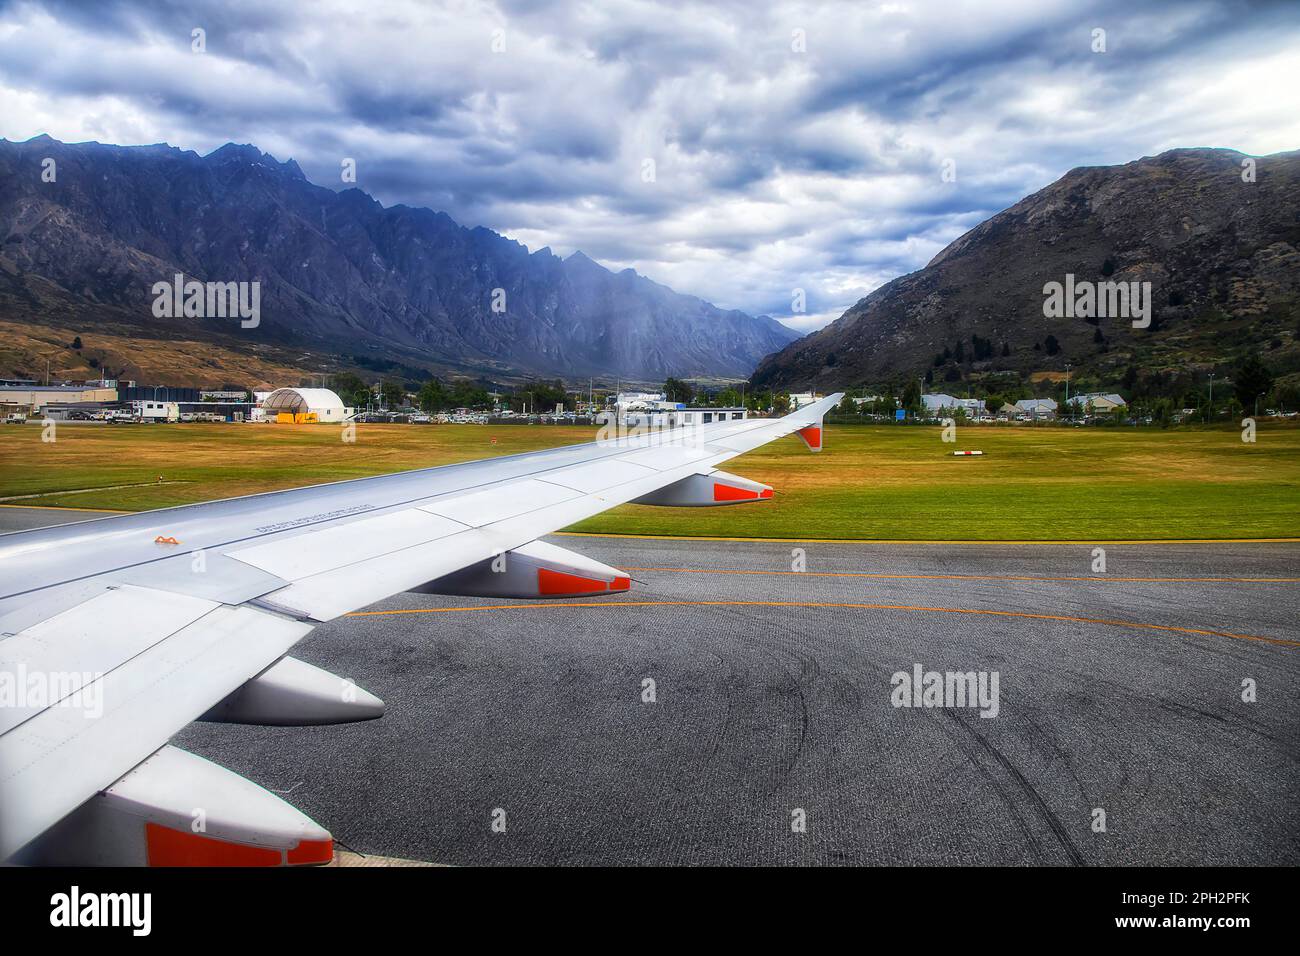 Avion passager sur la piste de l'aéroport de Queenstown entouré de montagnes pittoresques - destination touristique populaire en Nouvelle-Zélande. Banque D'Images